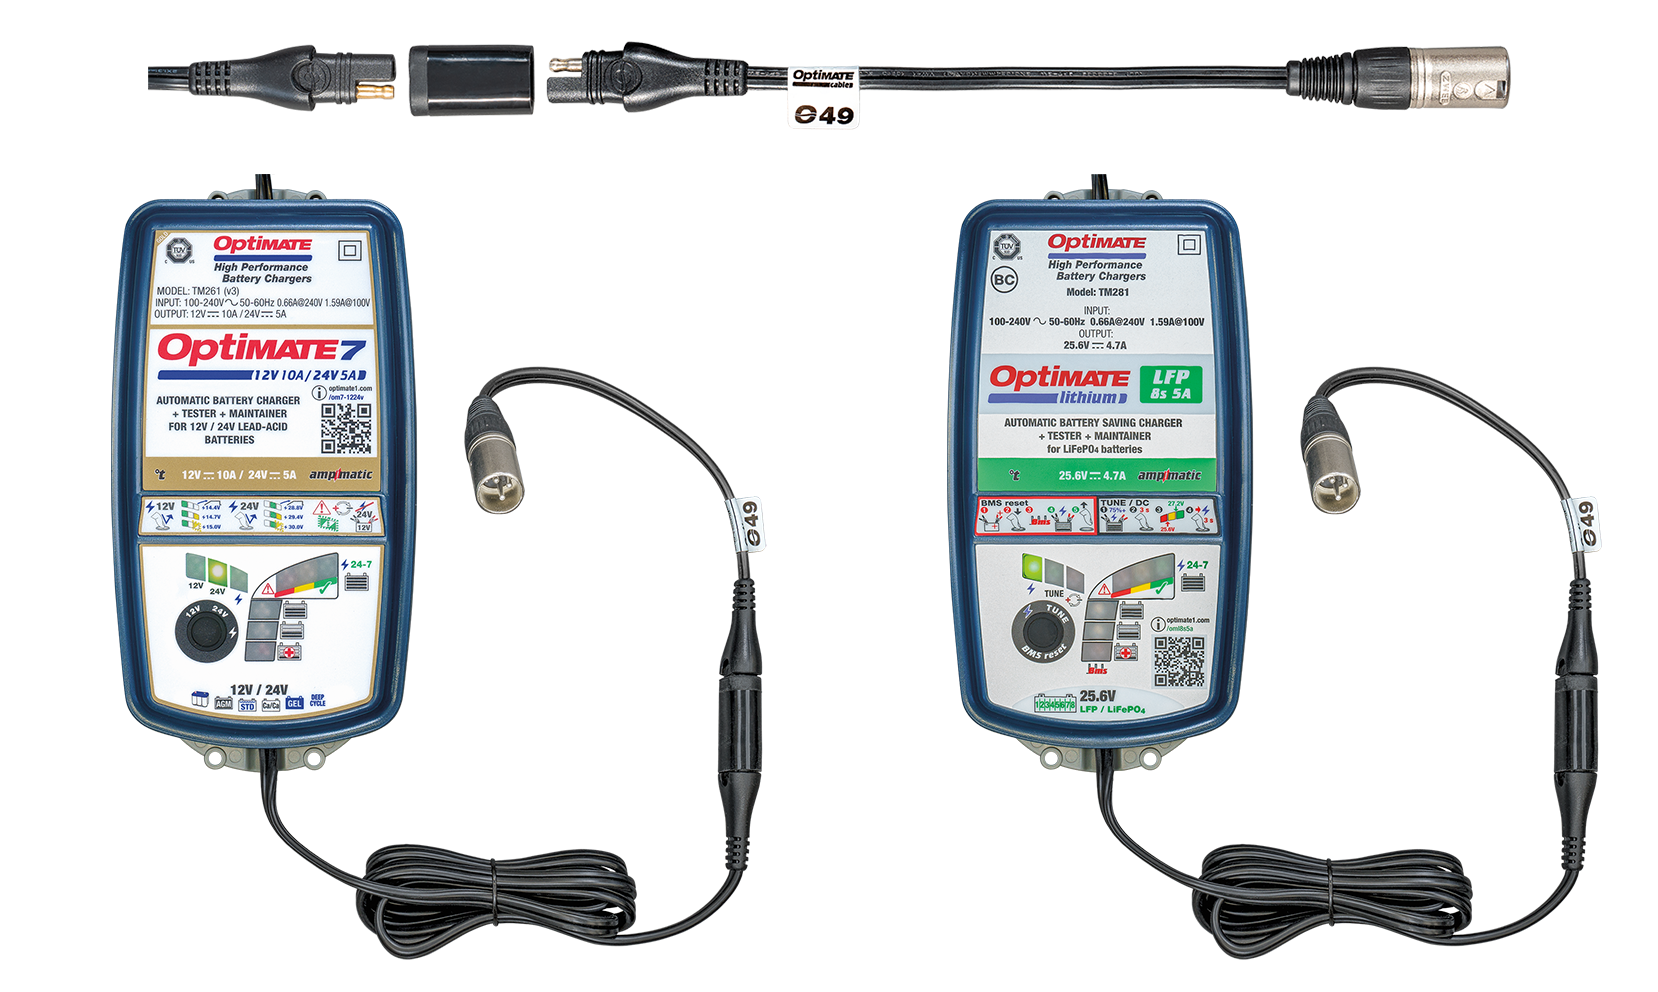 Bereid uw OptiMate 24V acculader voor op aansluiting op uw medische apparatuur met onze O-49 xlr-stekker